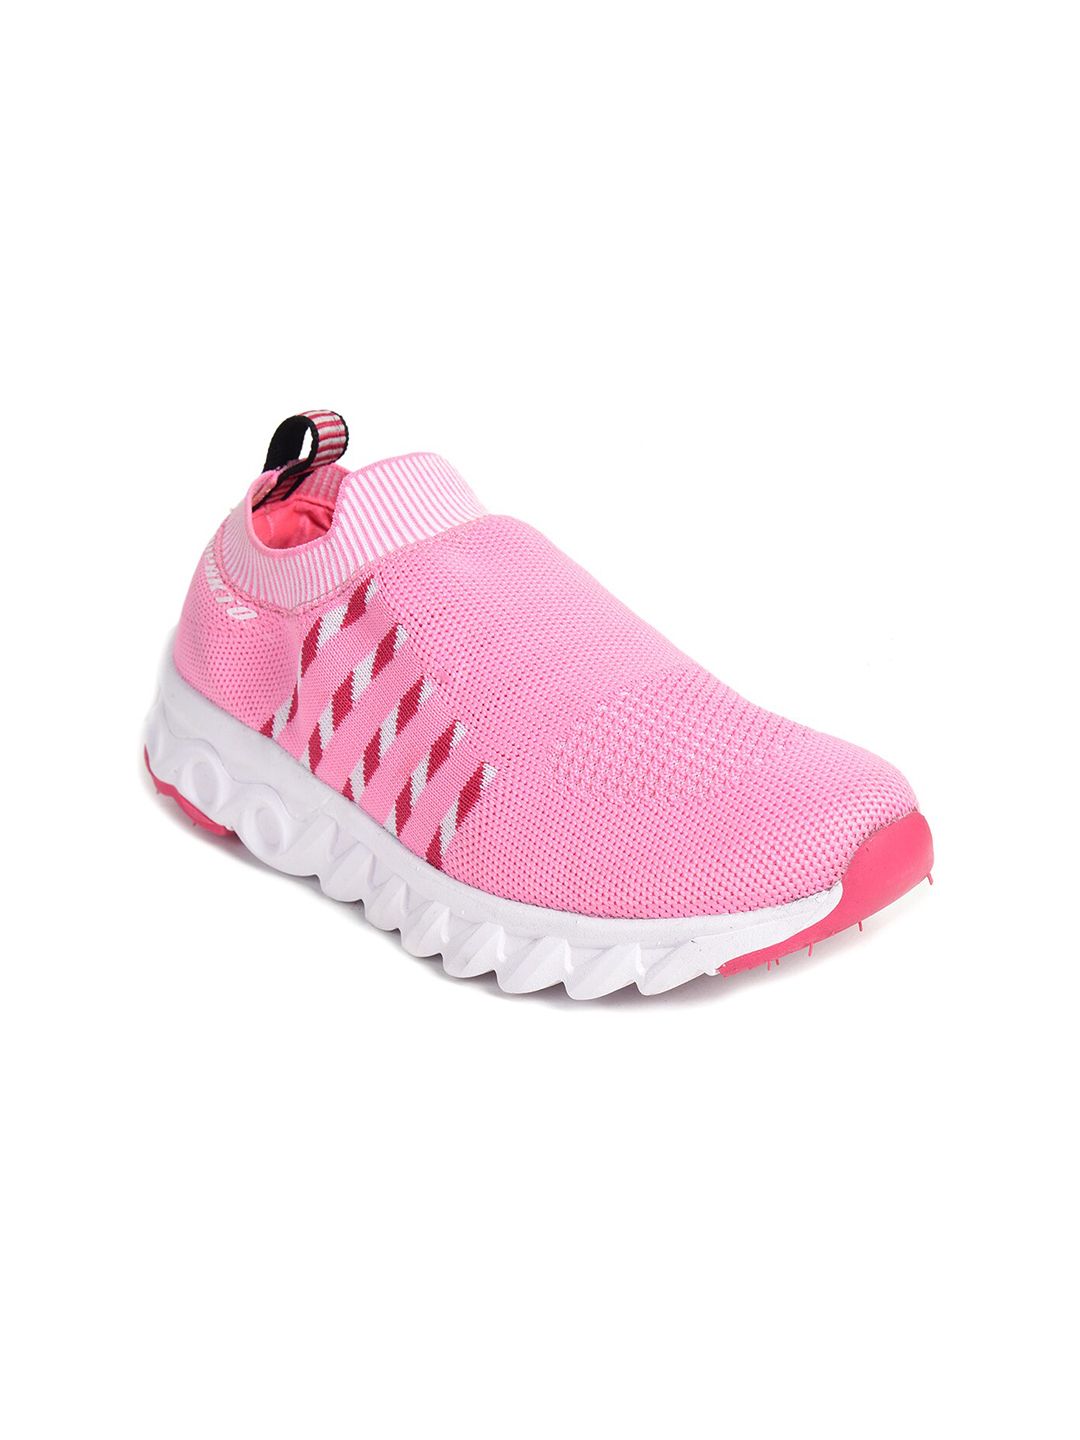 IMPAKTO Women Pink Mesh Running Non-Marking Shoes Price in India